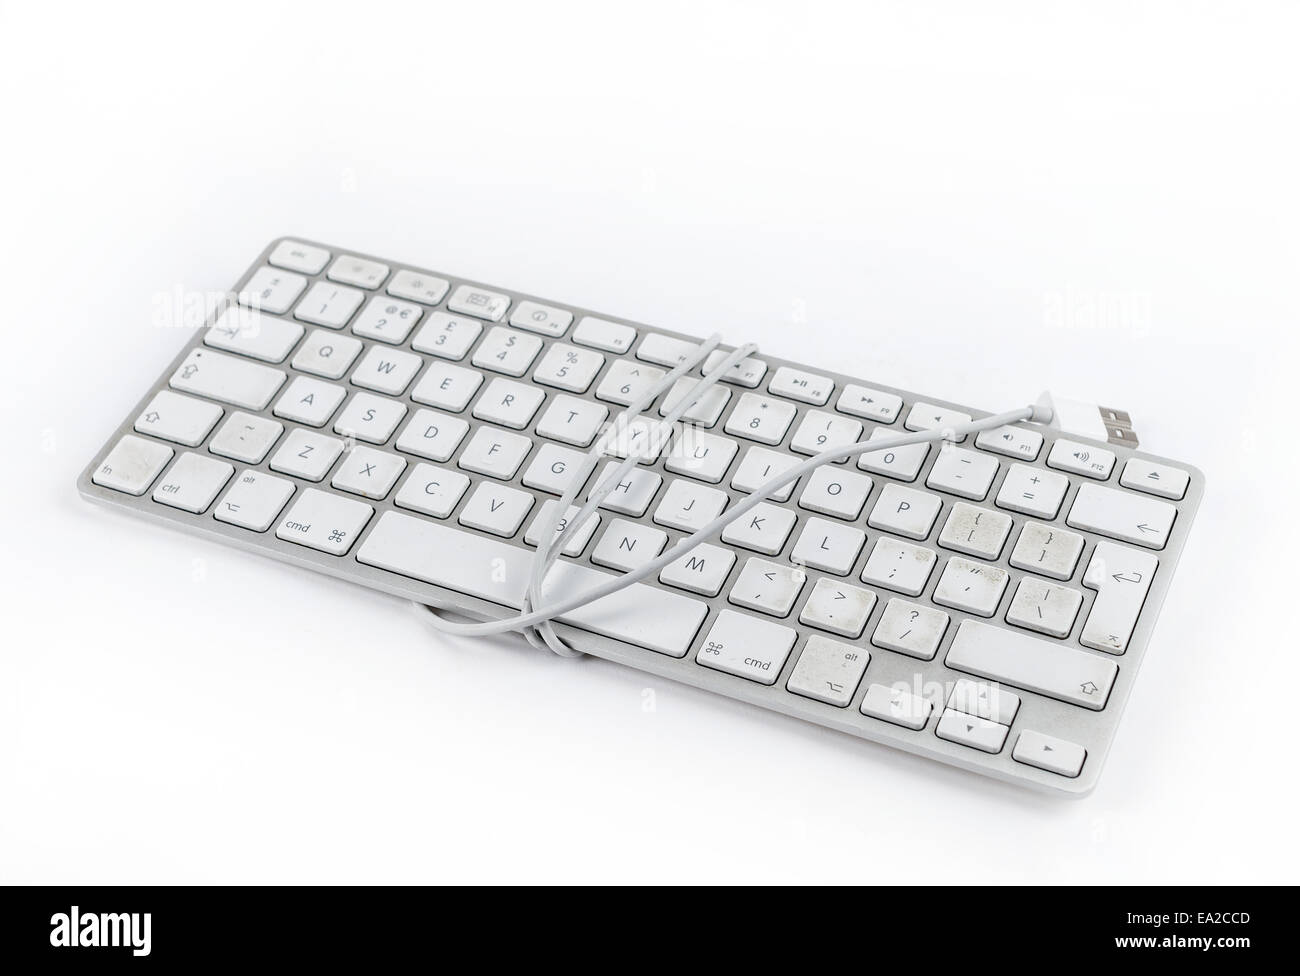 Qwerty keyboard imac Banque d'images détourées - Alamy